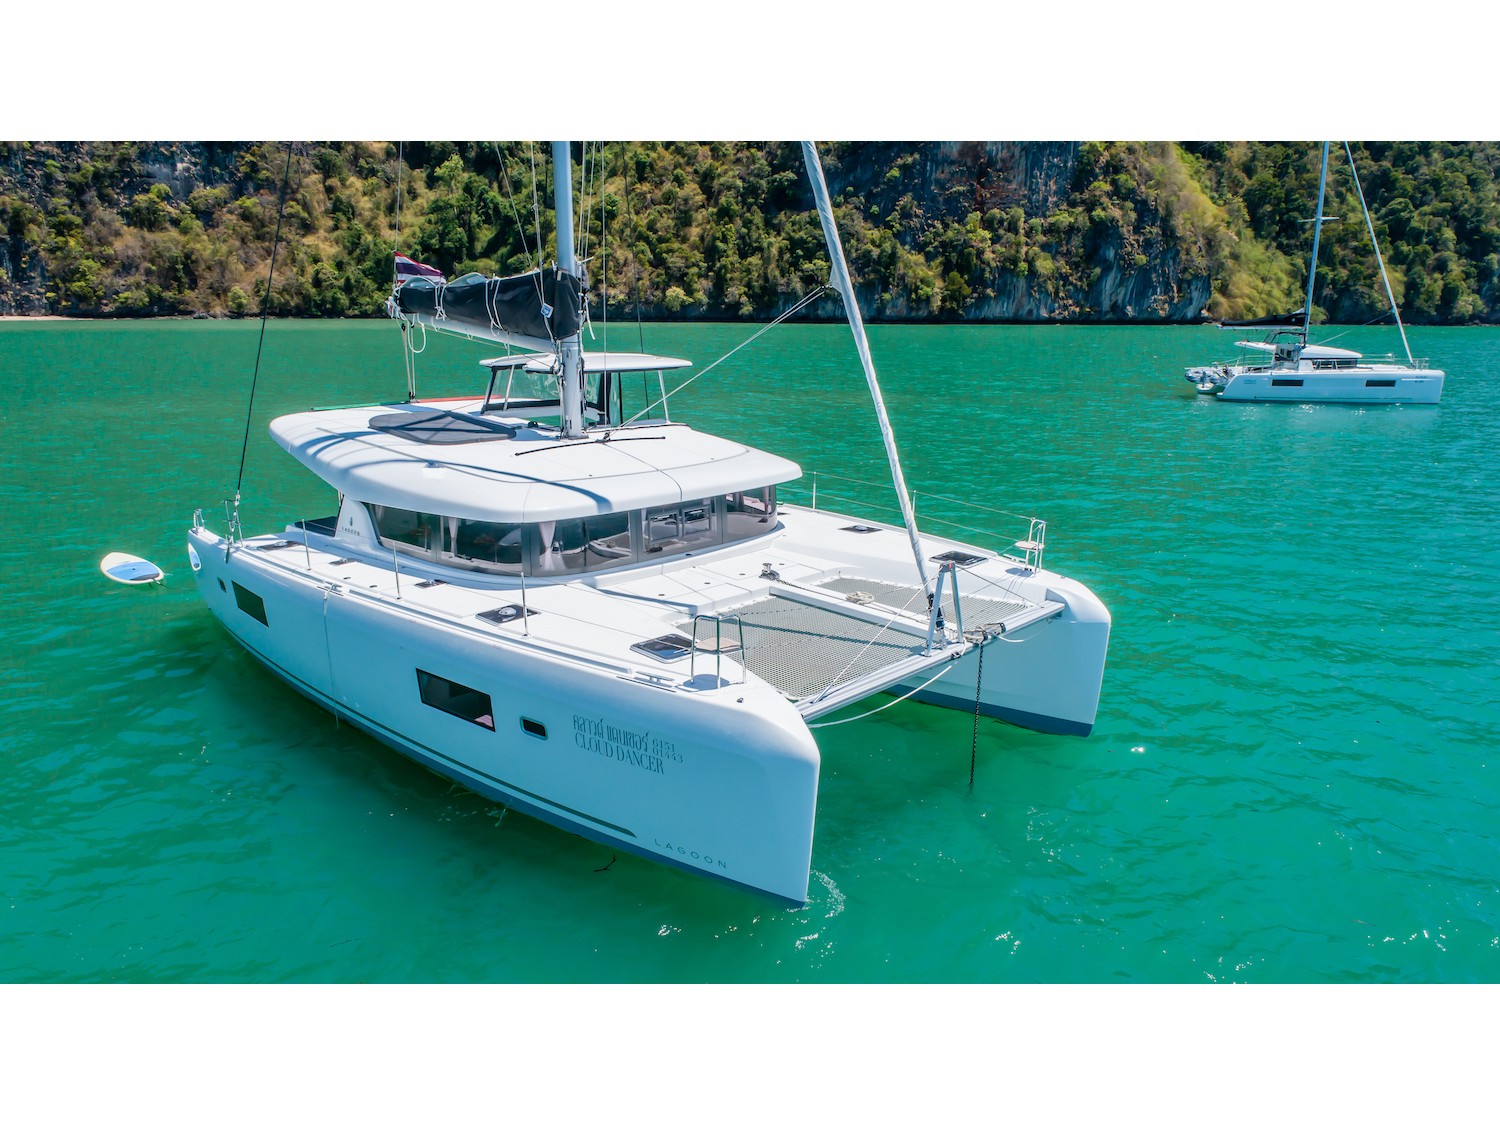 Lagoon 42 - Catamaran Charter Phuket & Boat hire in Thailand Phuket Ao Po Grand Marina 2